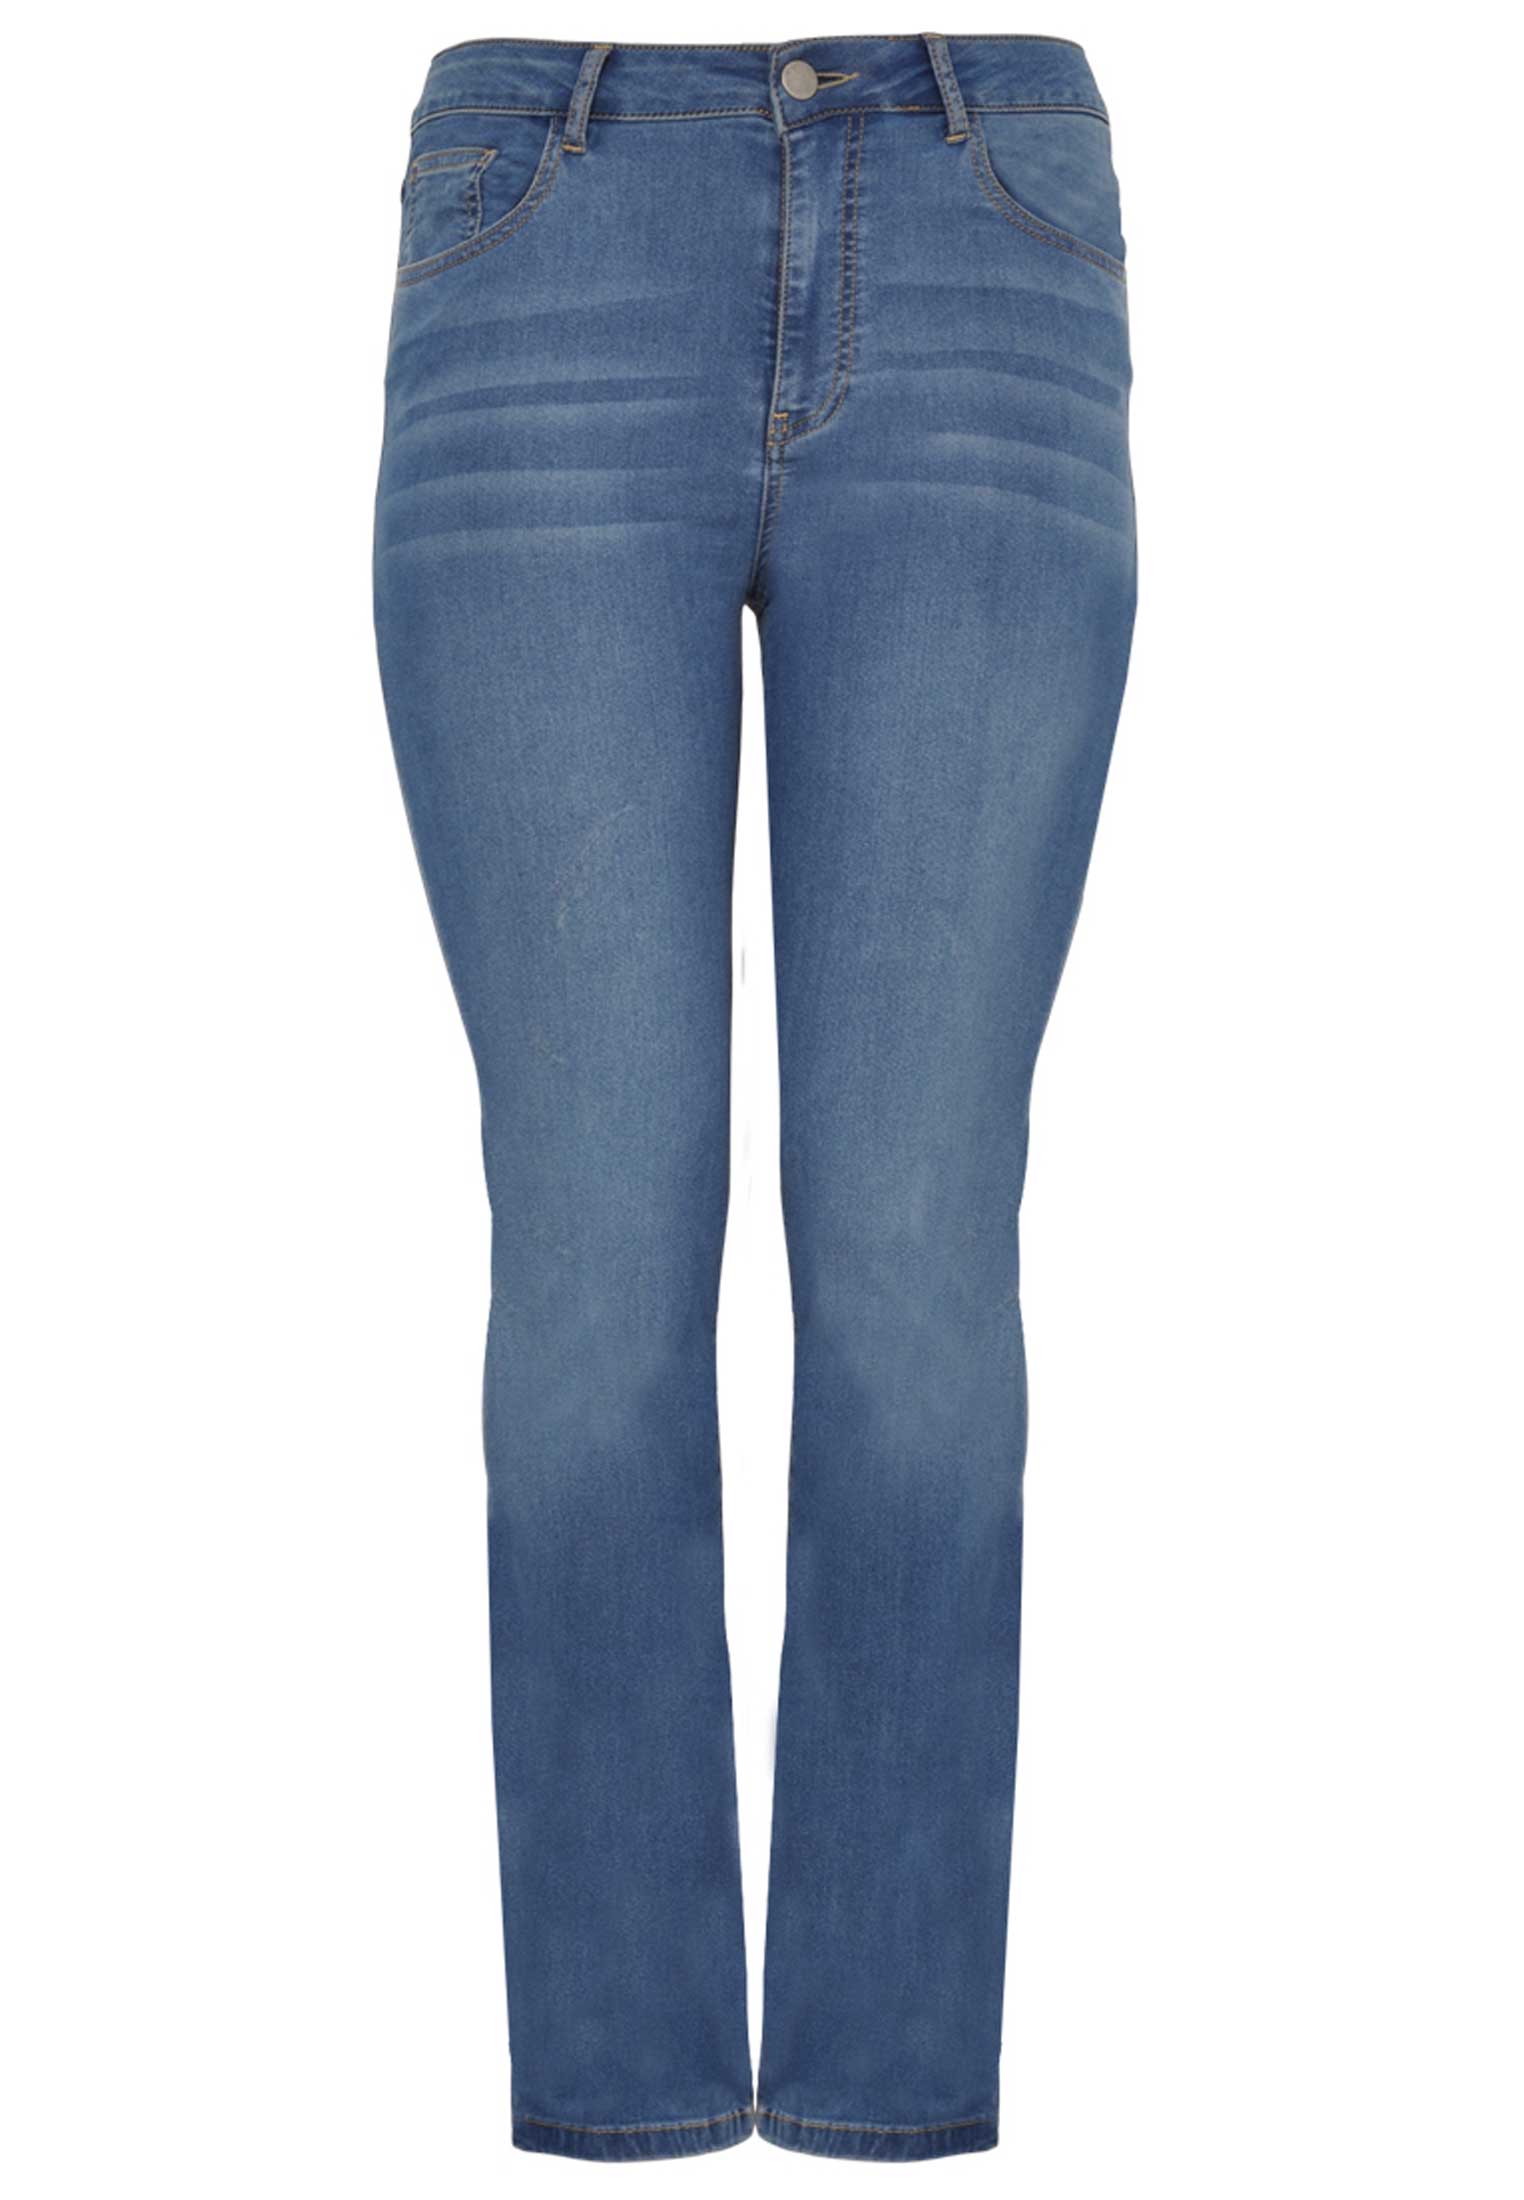 Jeans met rechte pijp 42 indigo